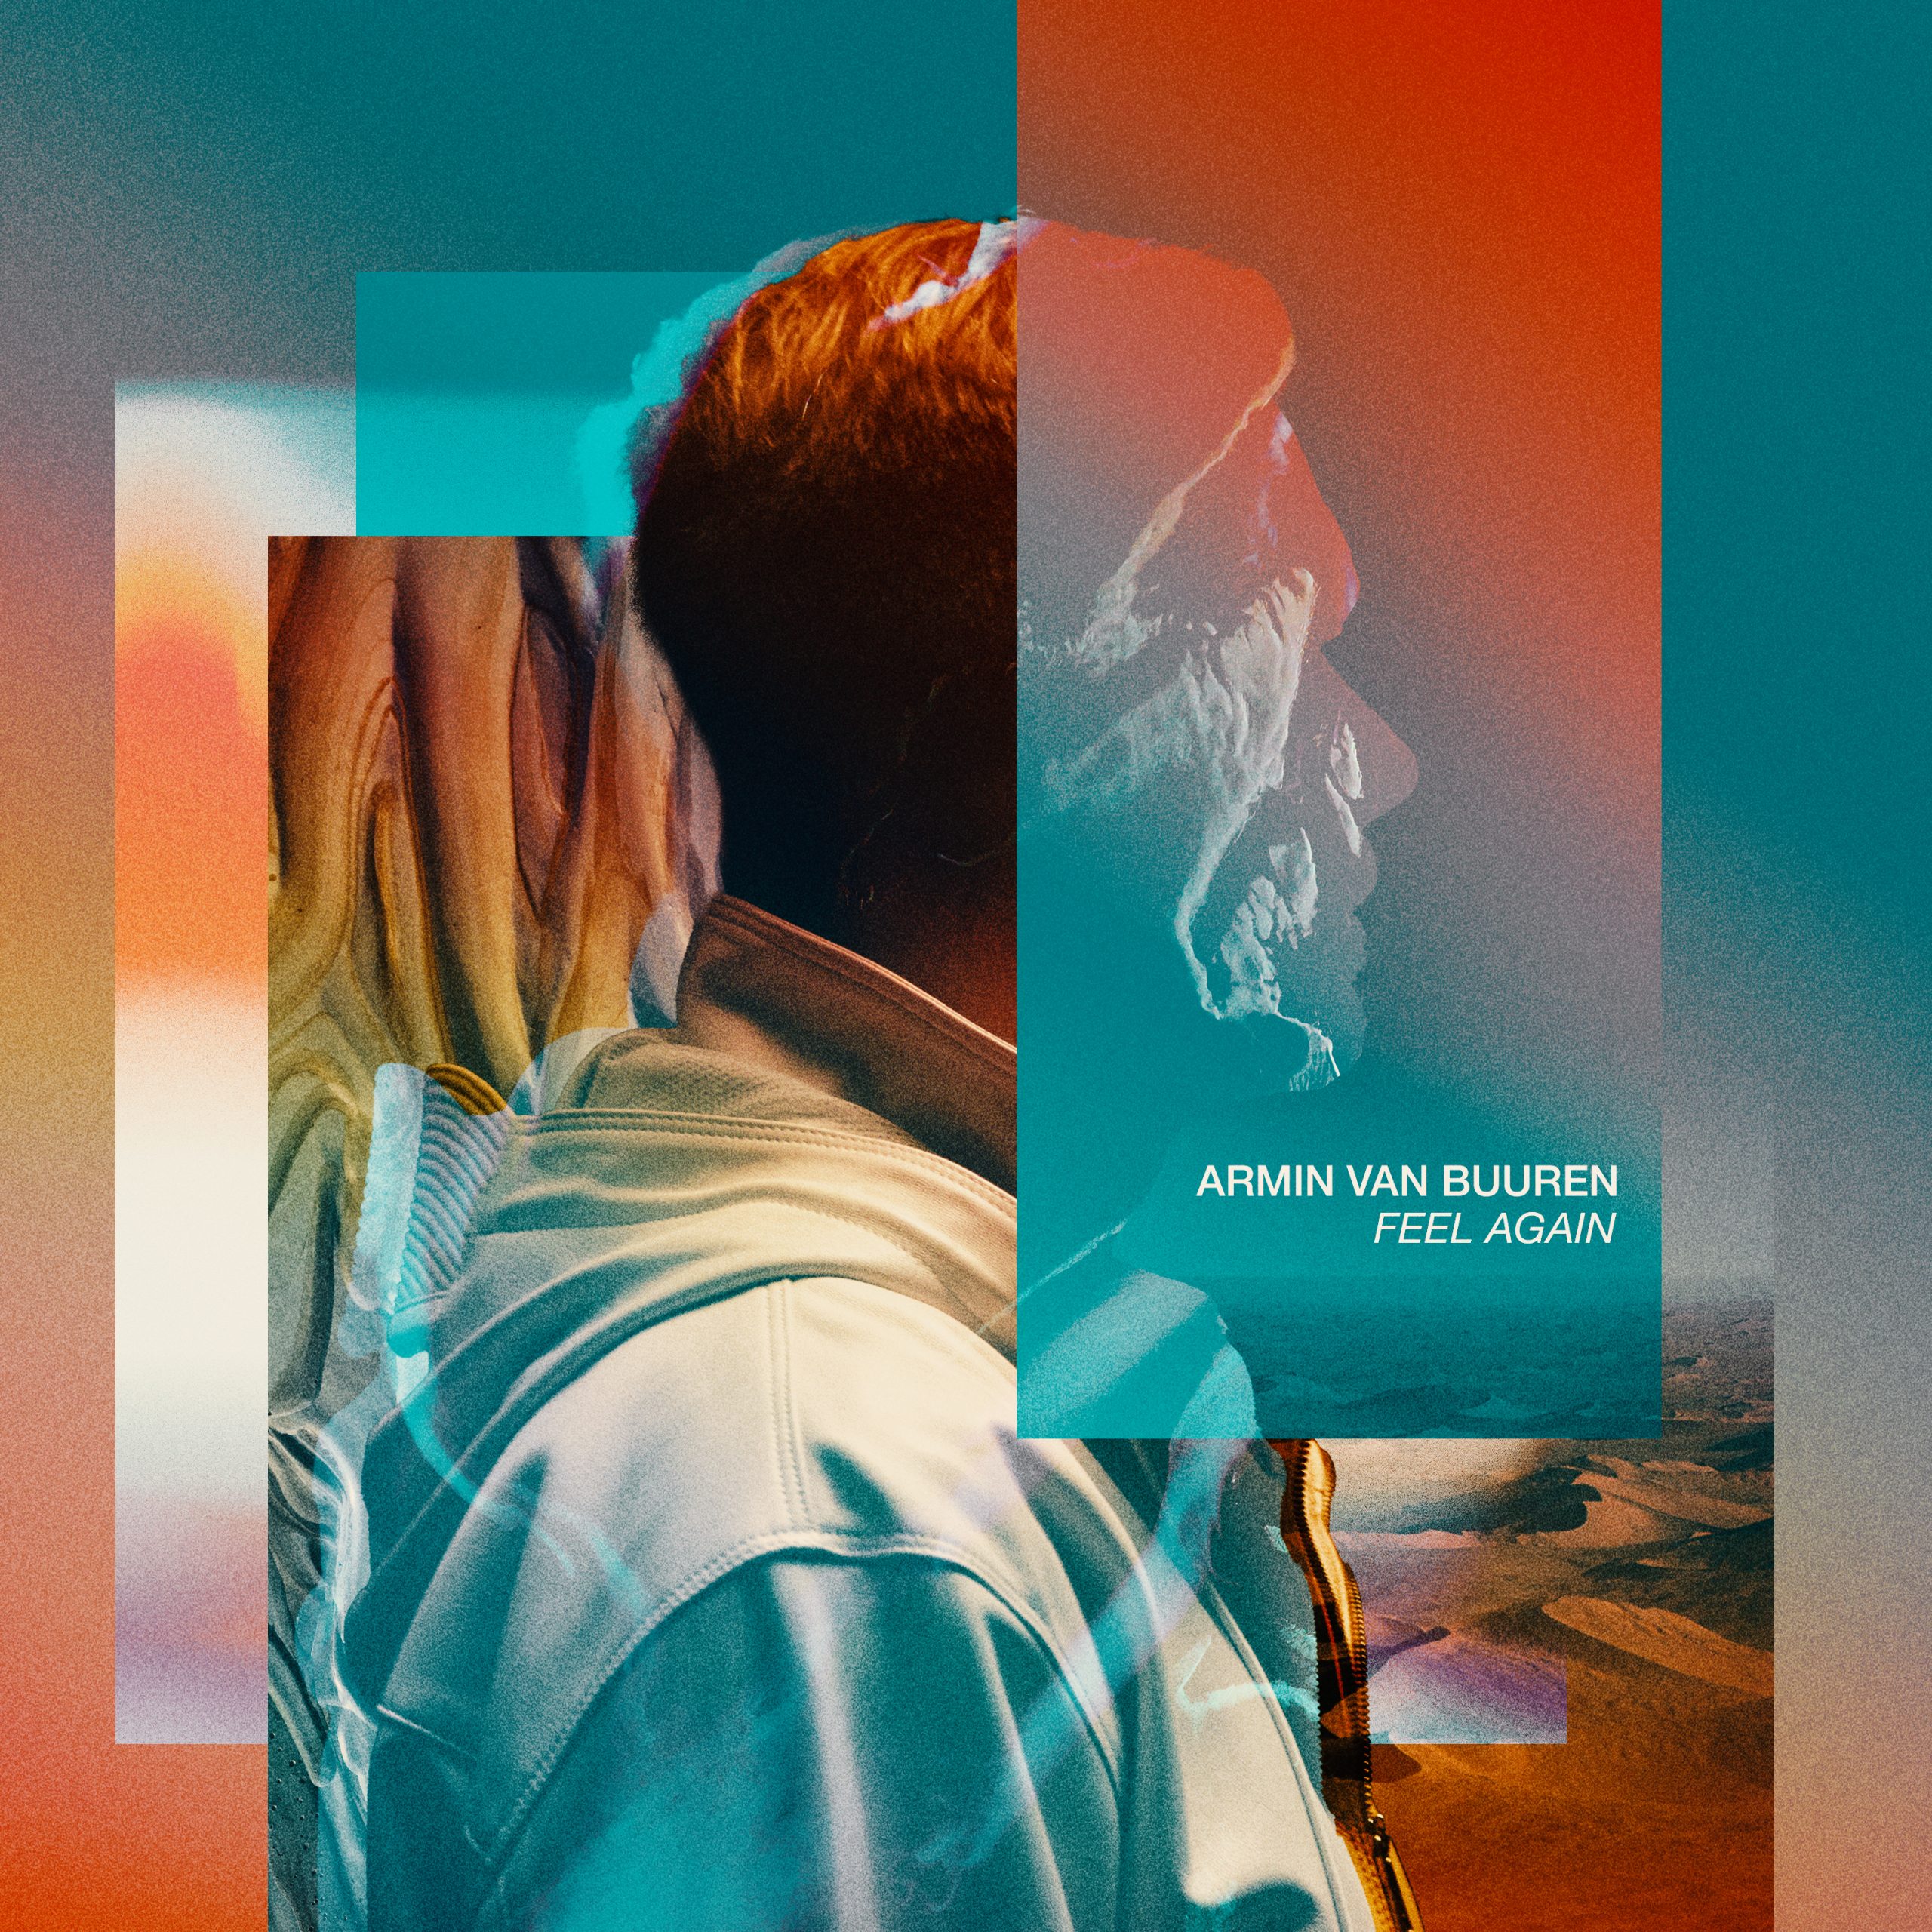 Biography – Armin van Buuren